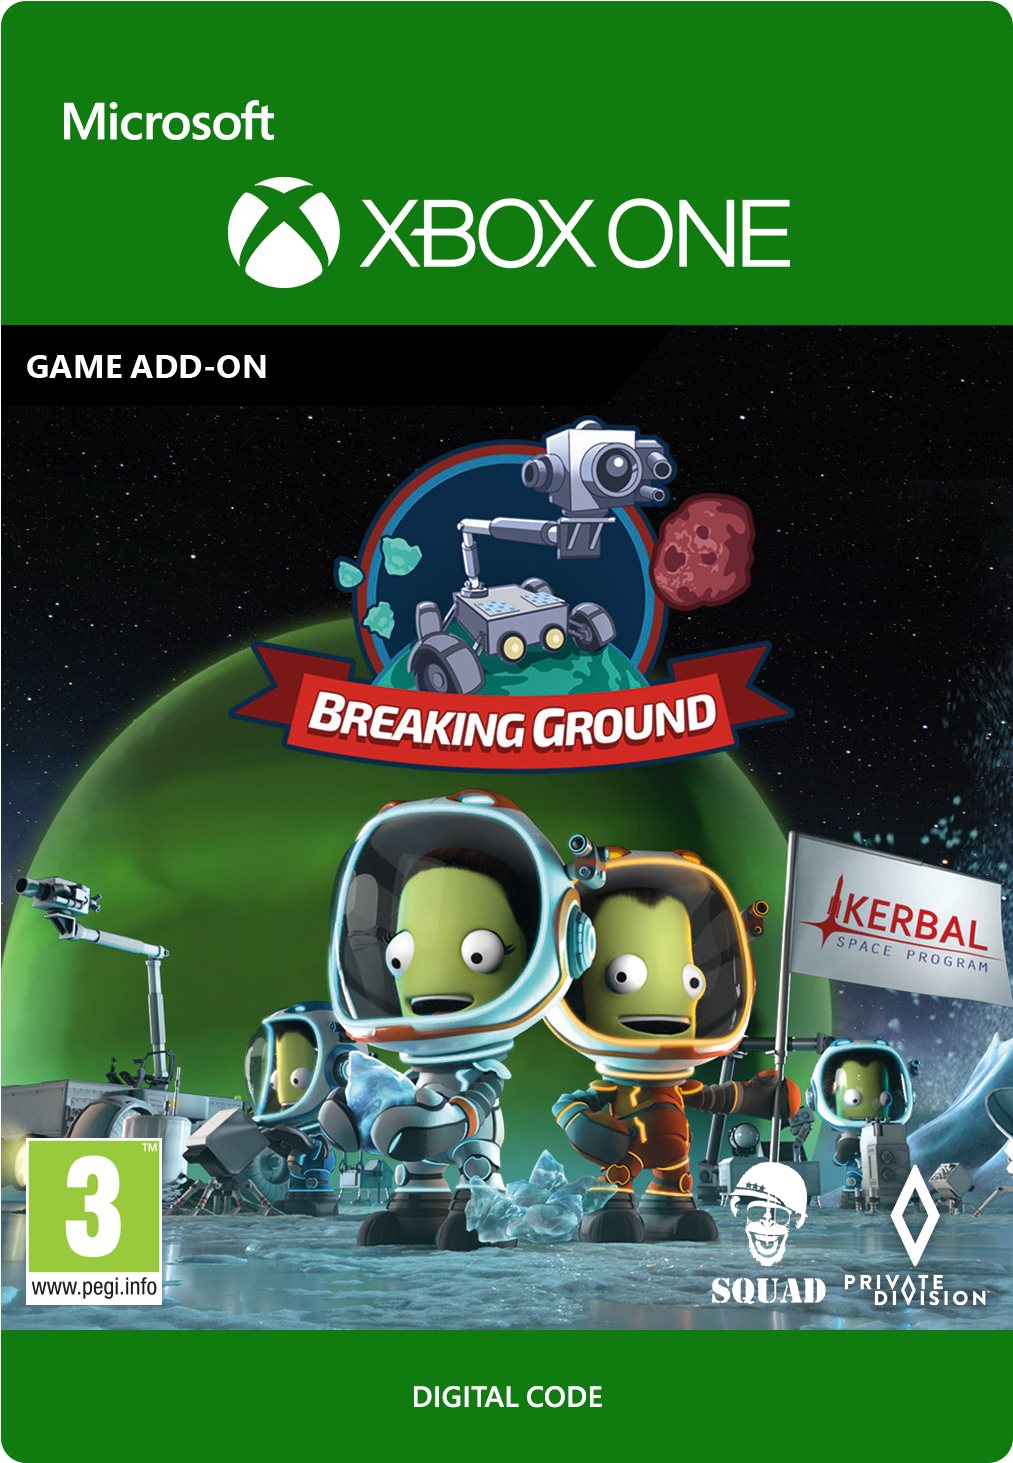 Kerbal Space Program: Breaking Ground - Xbox DIGITAL